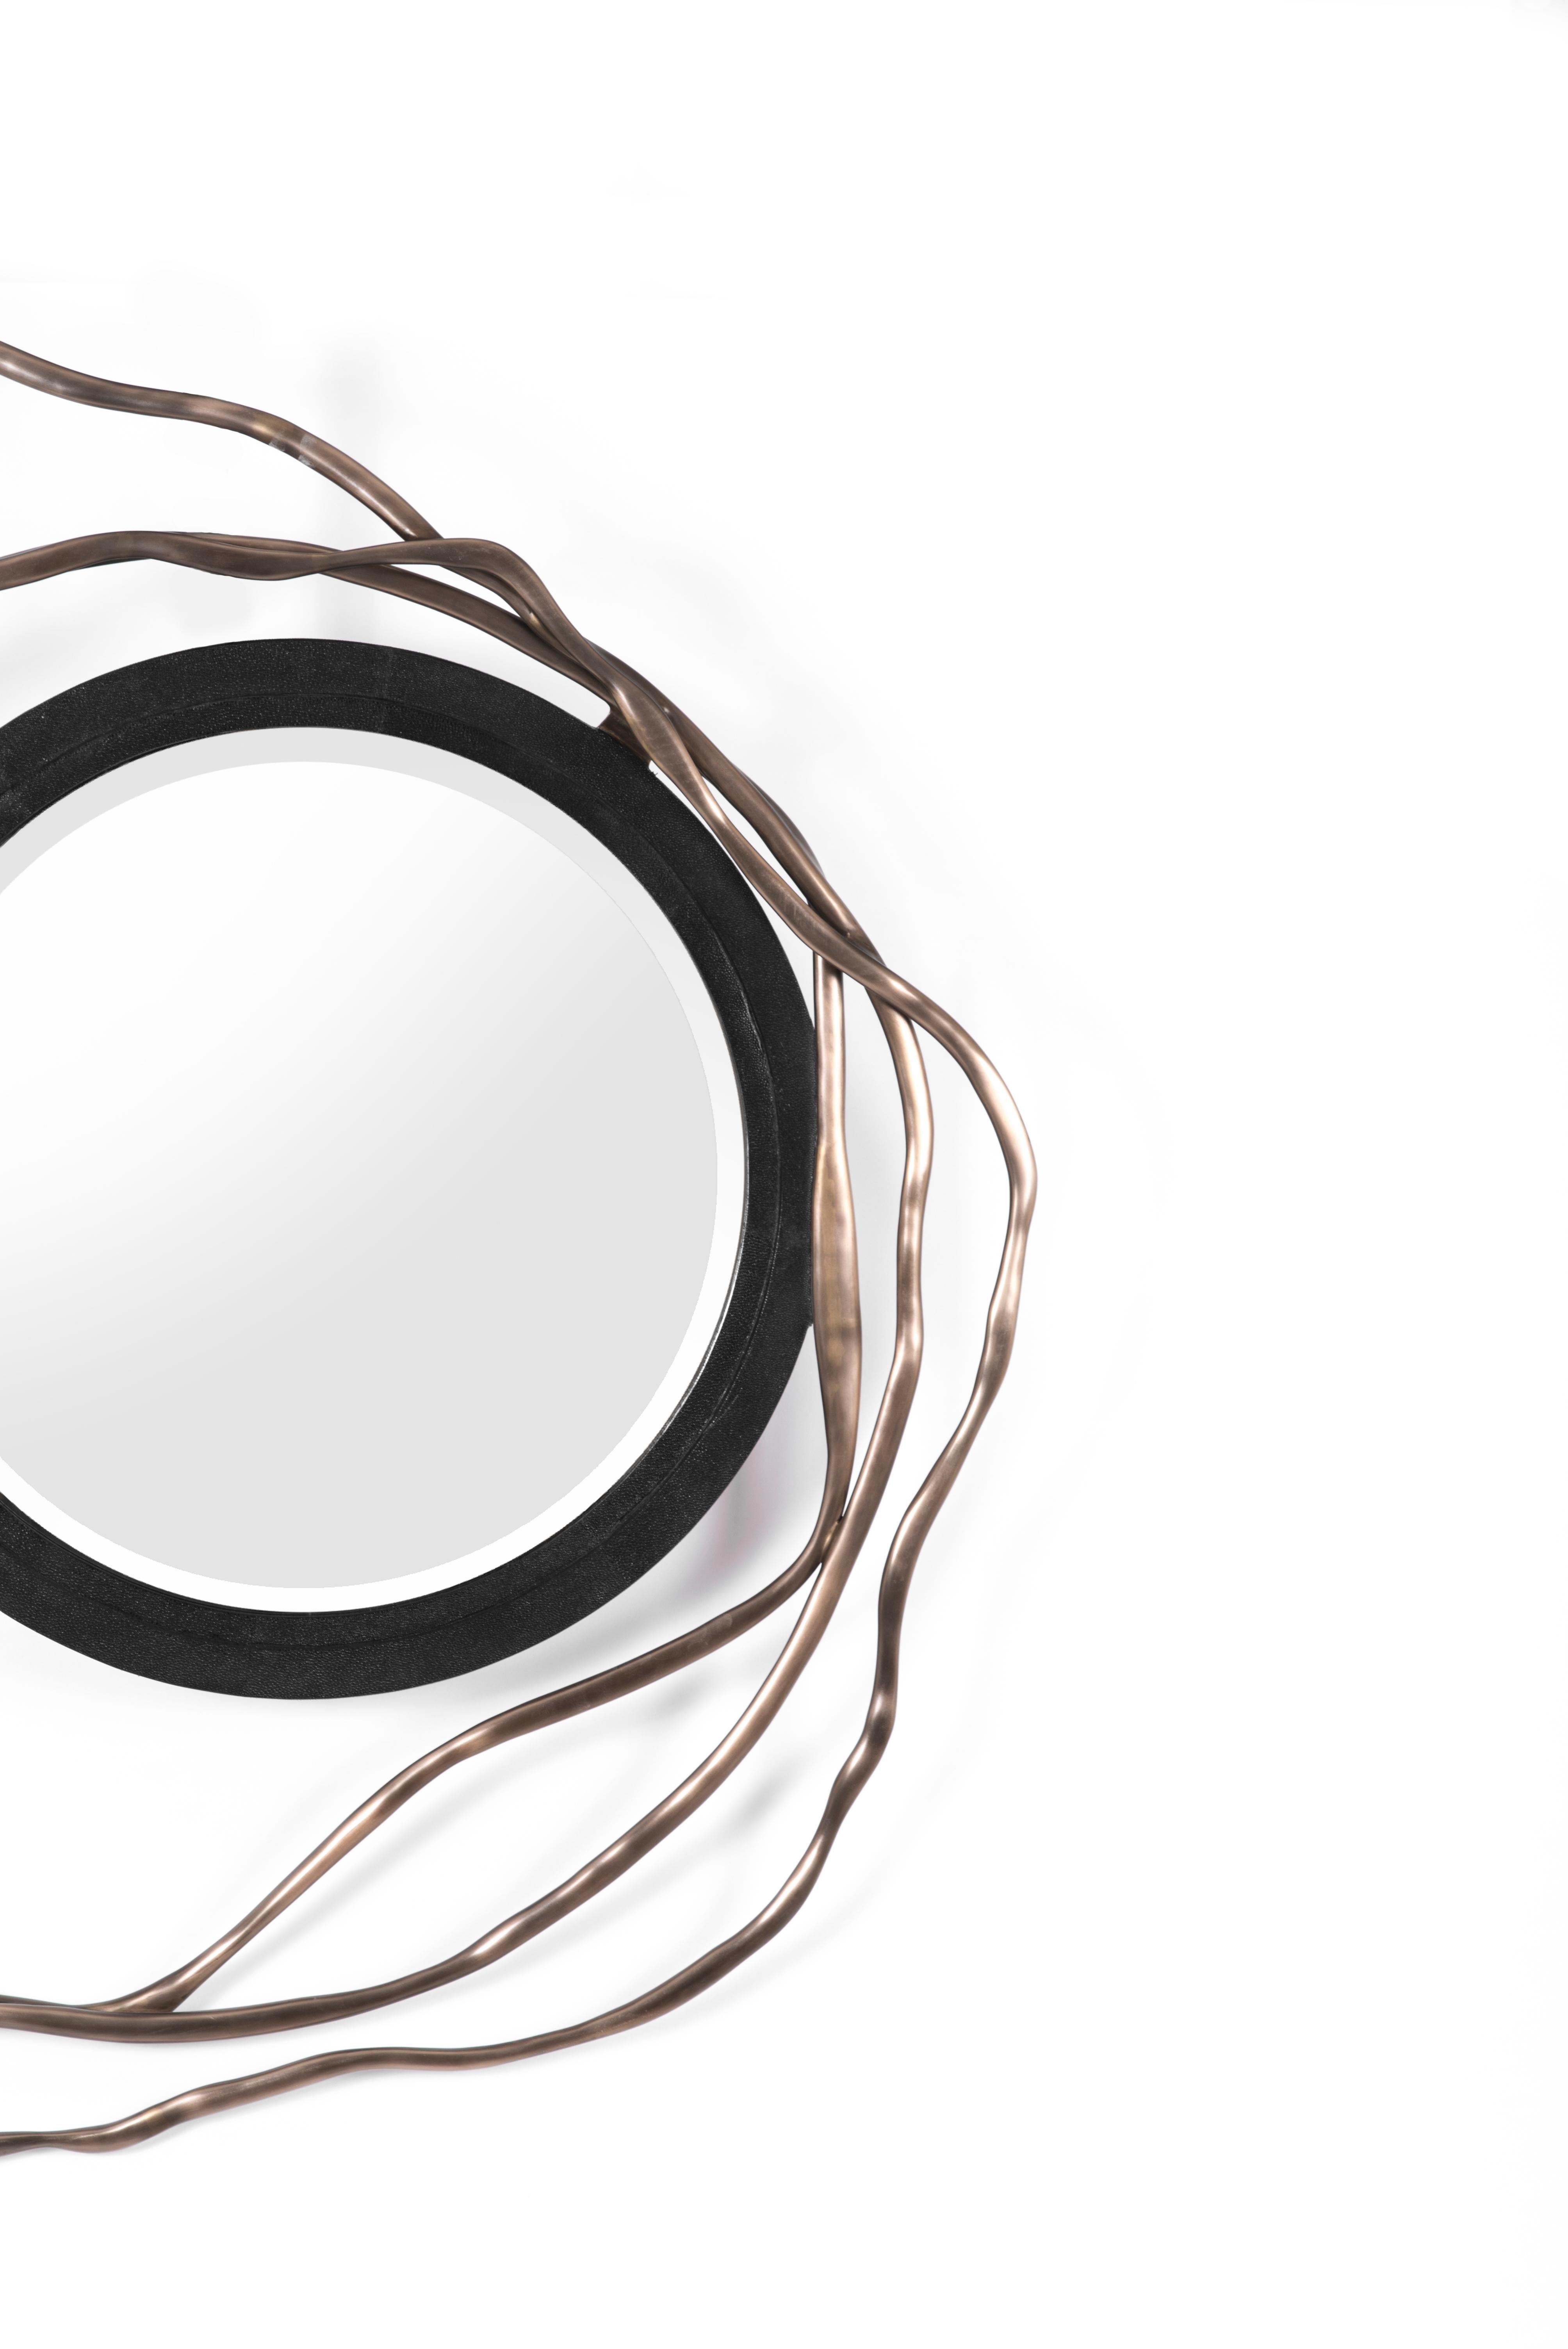 Der Dargelos-Spiegel ist mit seinen ätherisch inspirierten Wurzeln ein Statement. Die Verflechtung der gedrehten Bronze-Patina-Messingdrähte mit dem kreisförmigen schwarzen Chagrin-Rahmen des Spiegels schafft ein wahrhaft skurriles Gefühl, wobei das